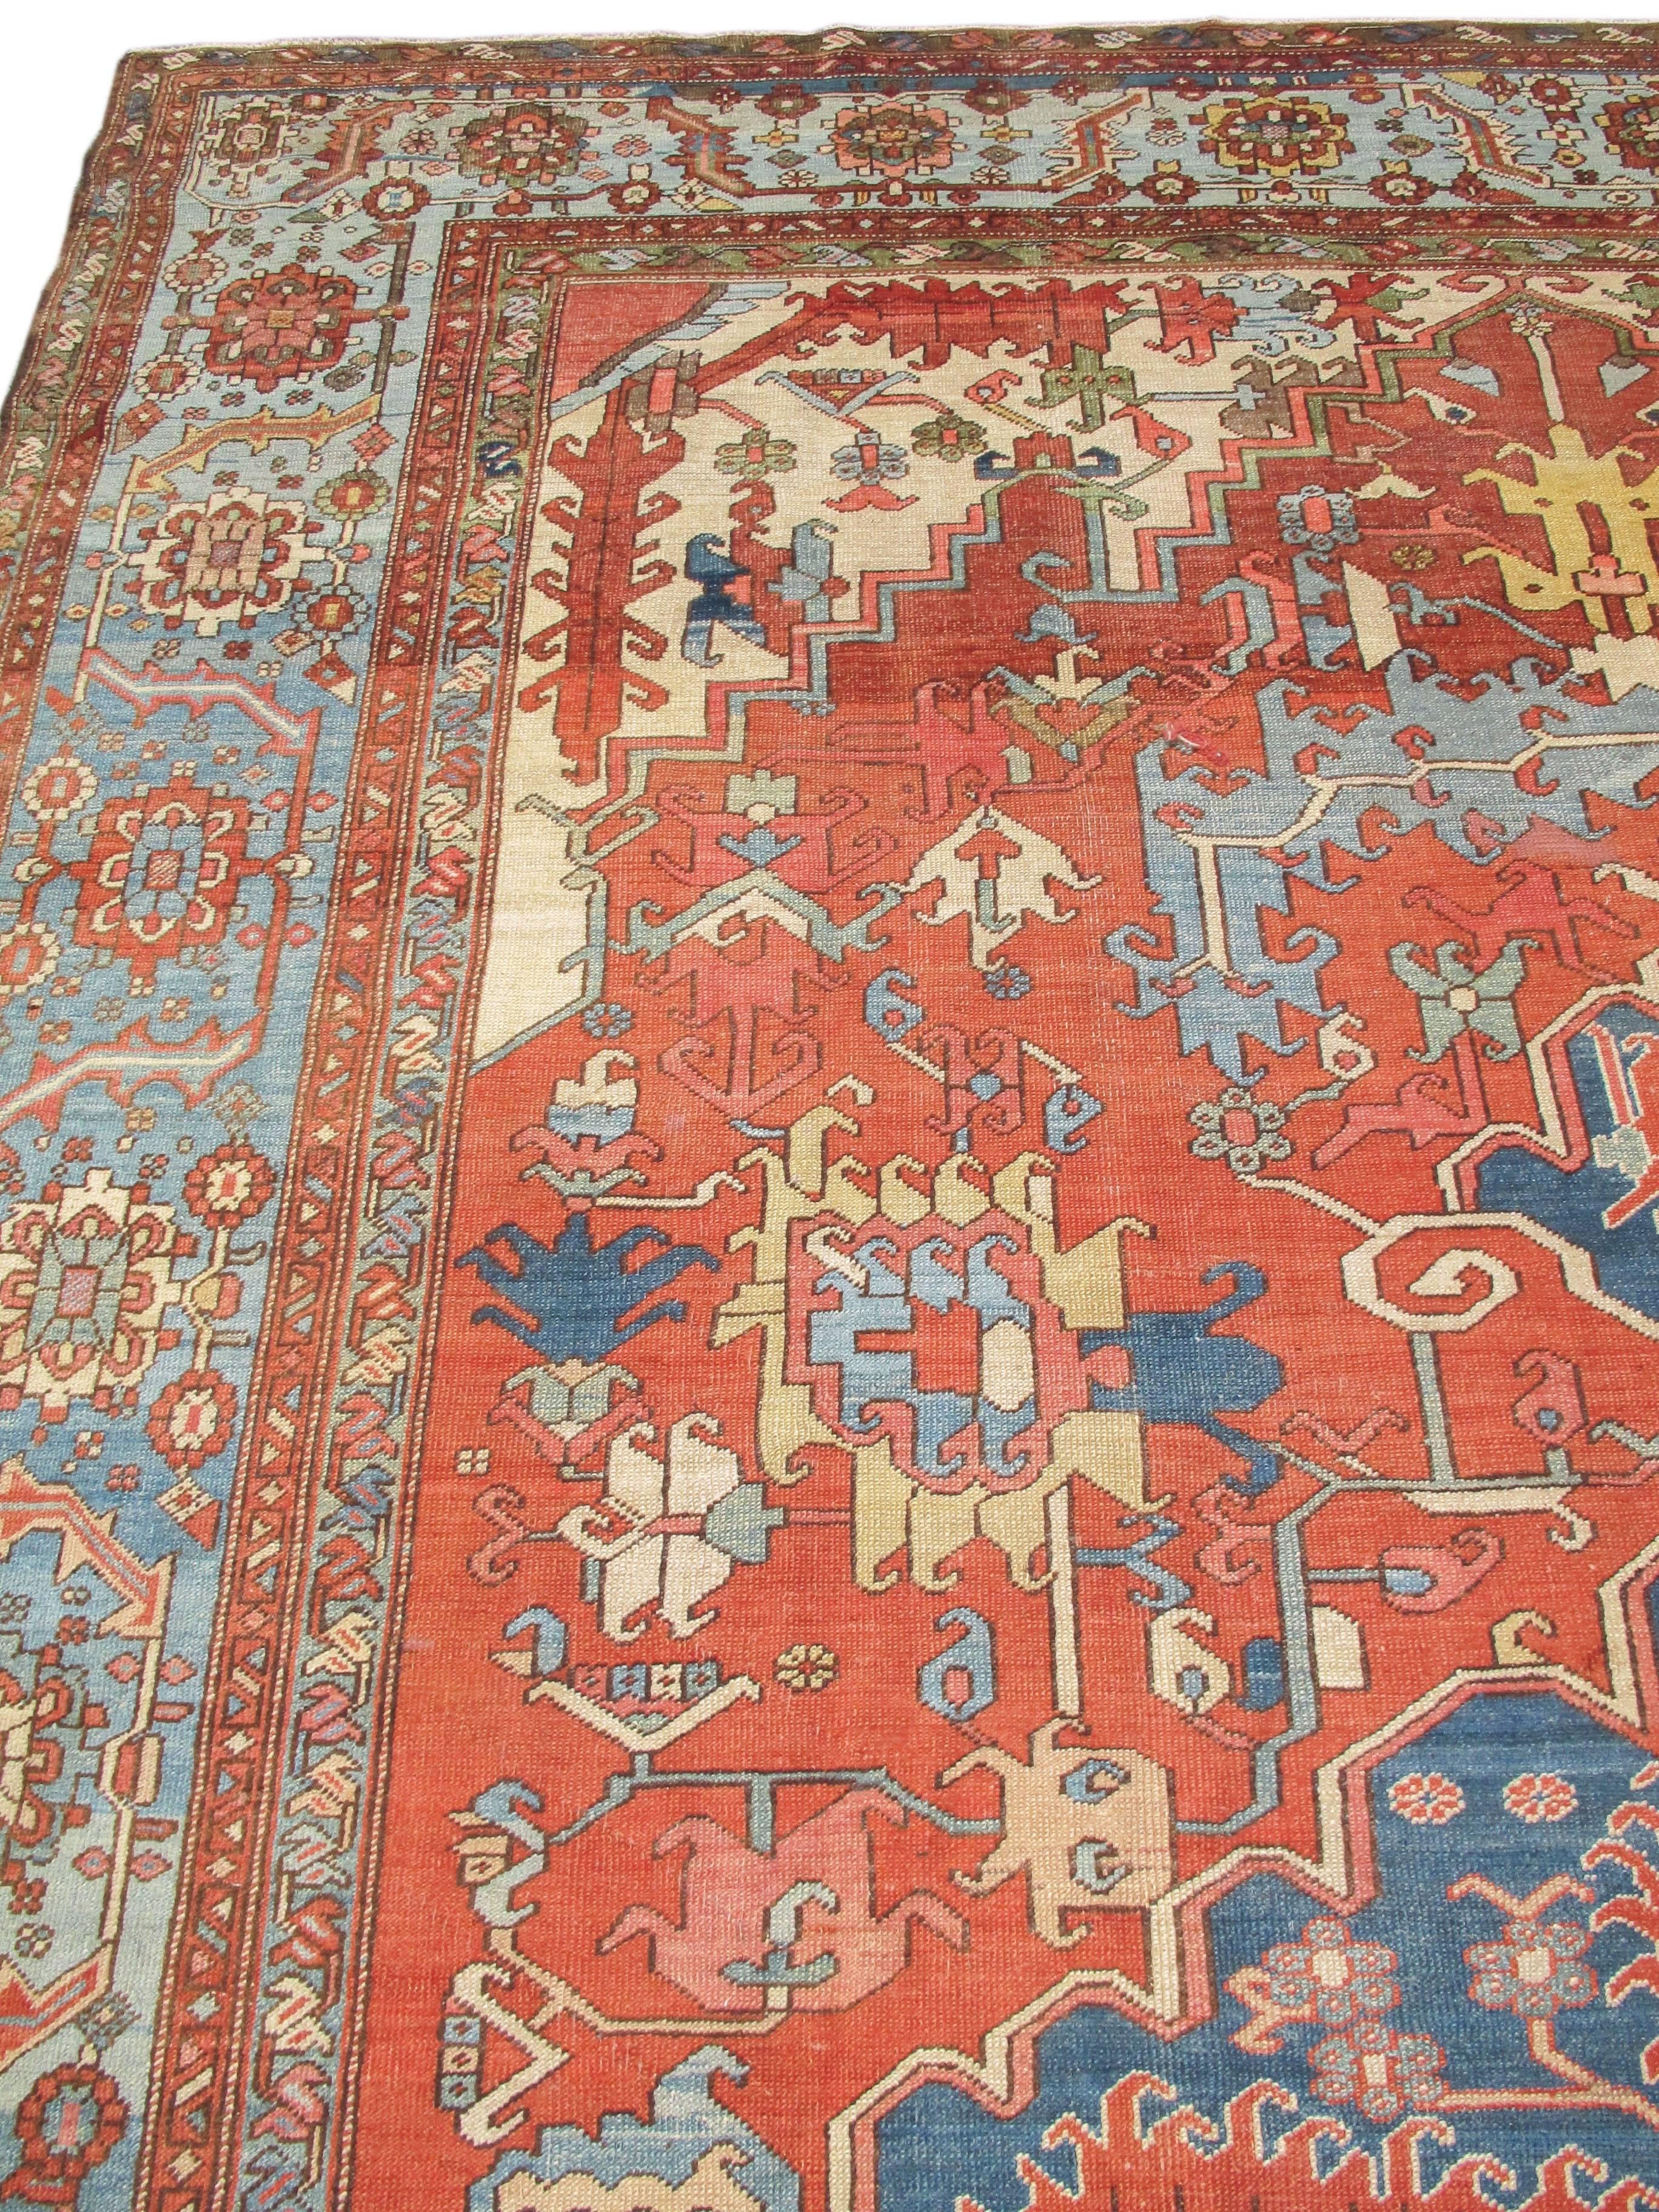 Late 19th Century Red and Blue Indigo Serapi Carpet 1